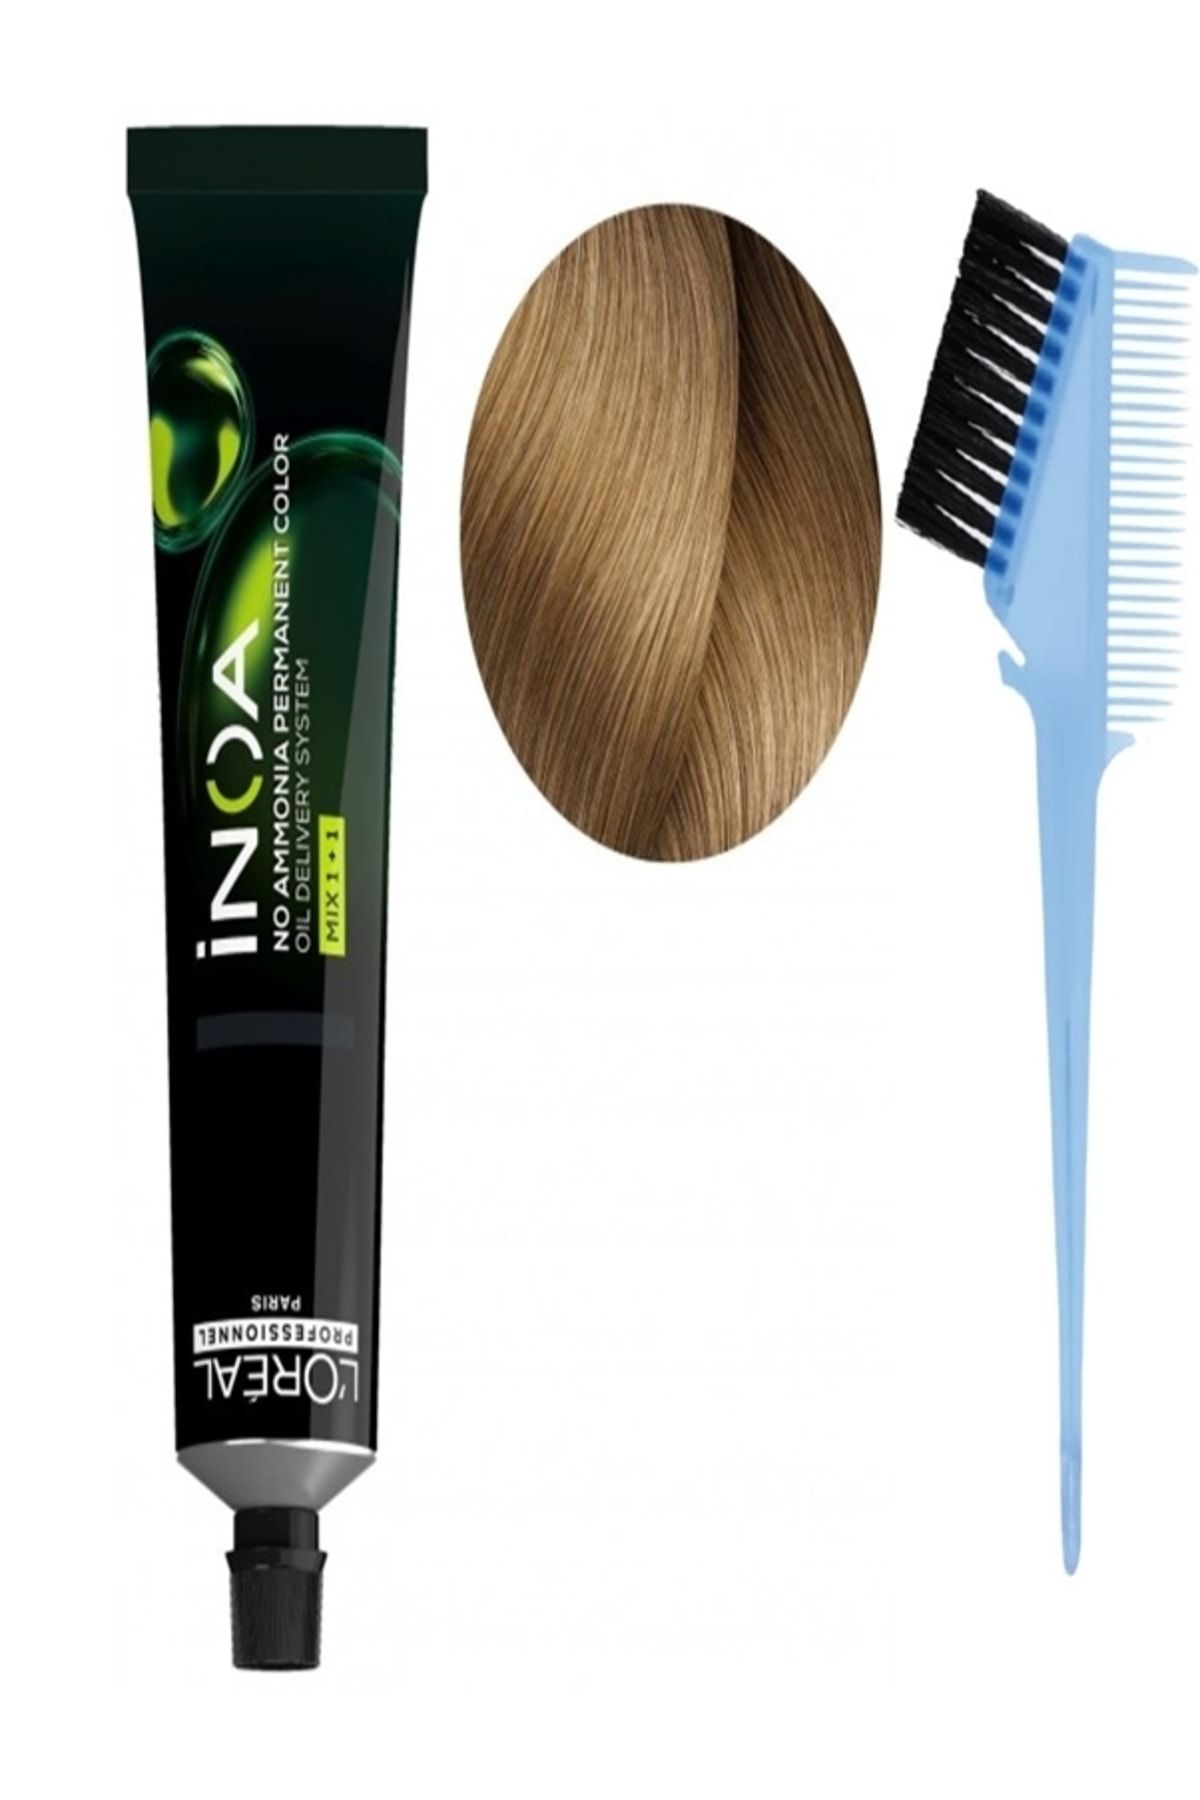 İNOA Yeni Amonyaksız Vegan Saç Boyası 9 Sarı 60gr Boya Fırçası